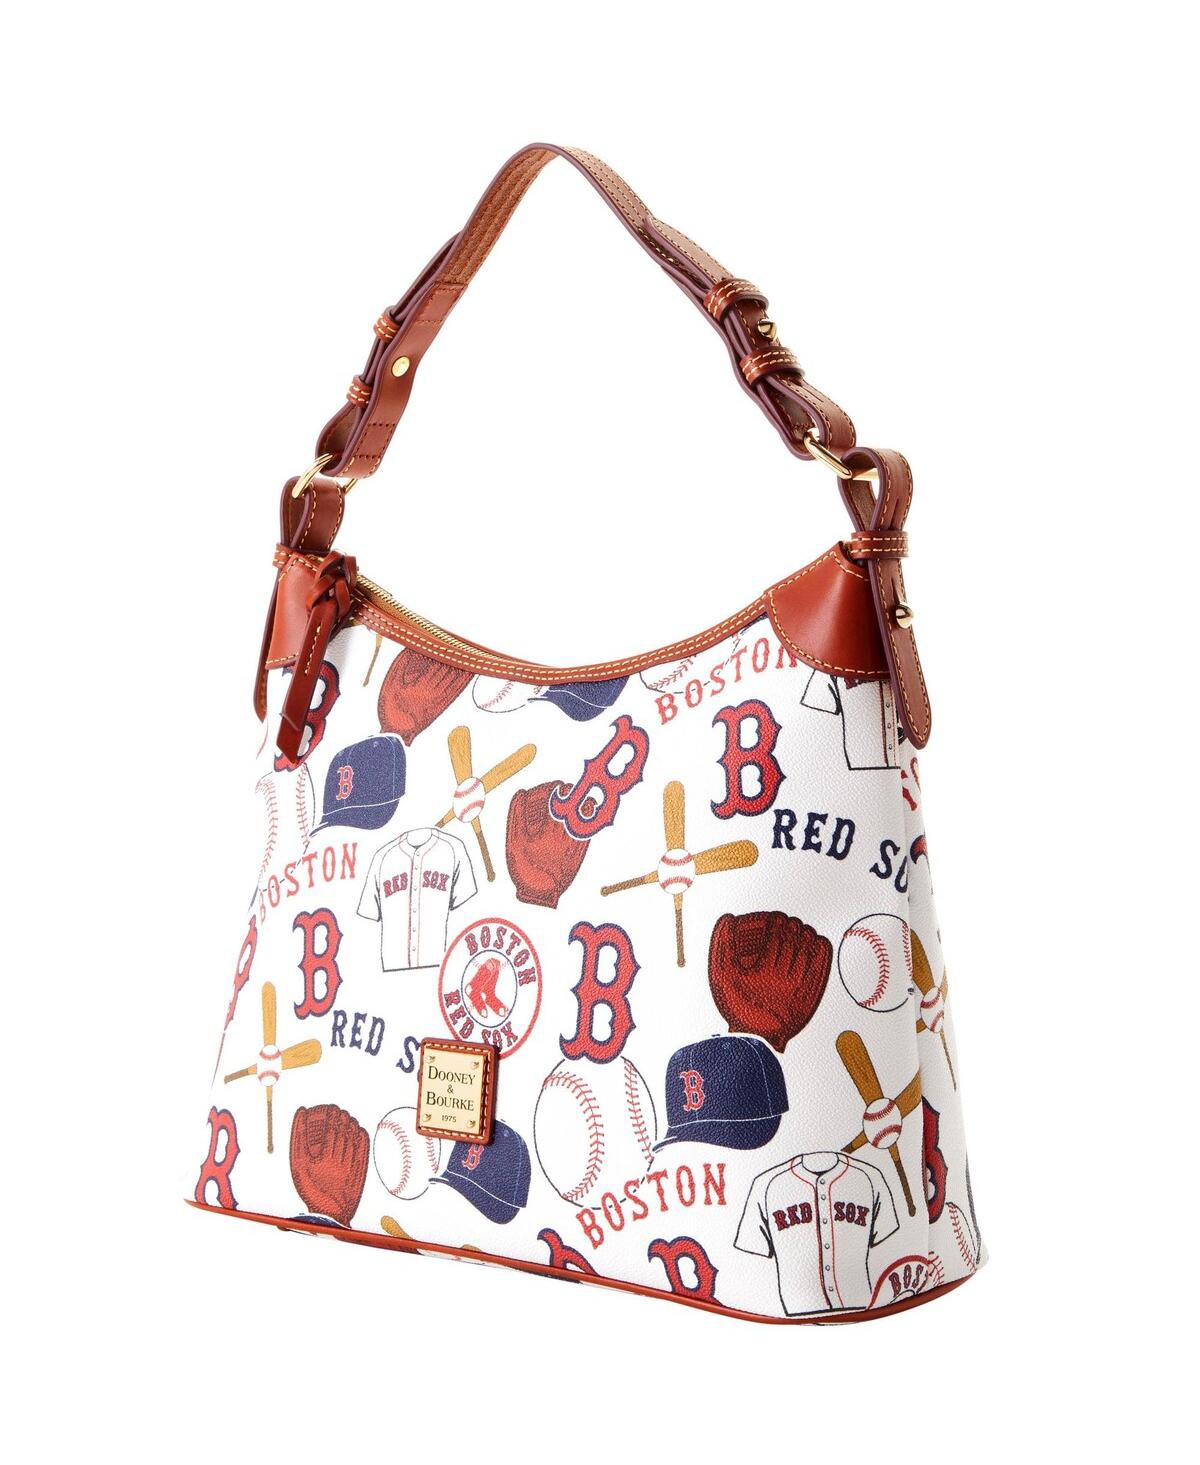 Dooney & Bourke Women's Bags & Handbags for sale